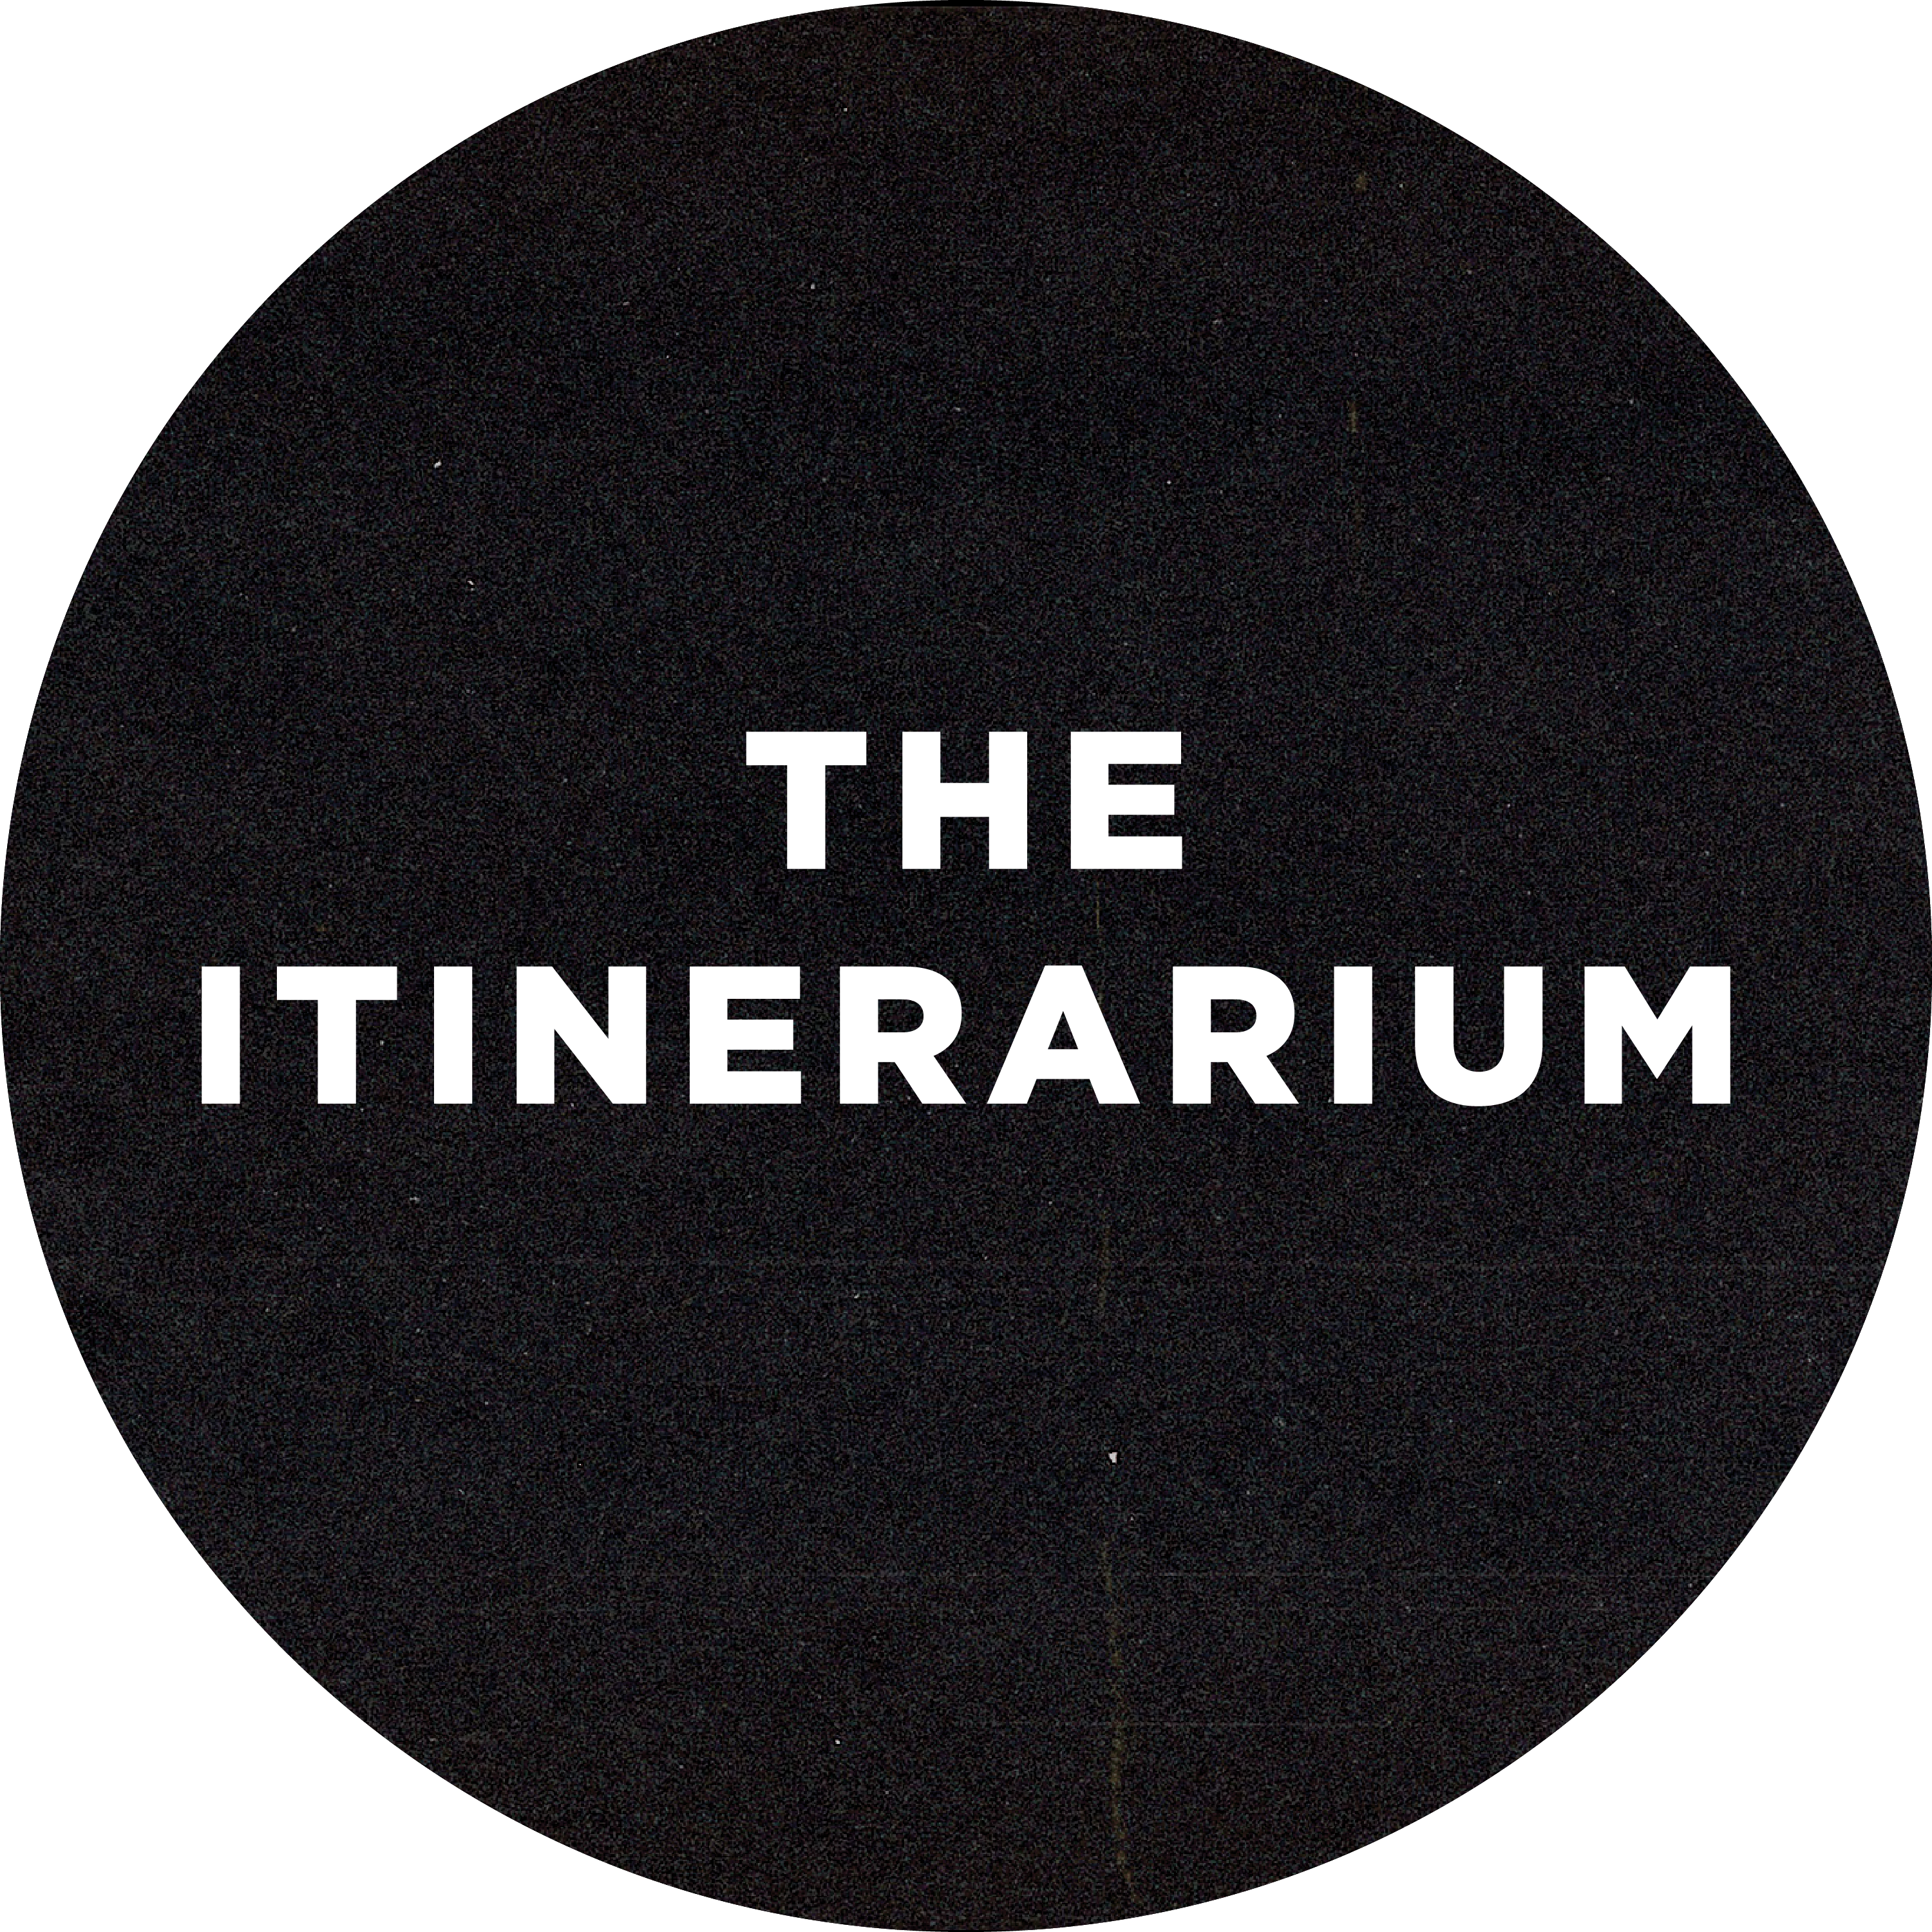 The Itinerarium